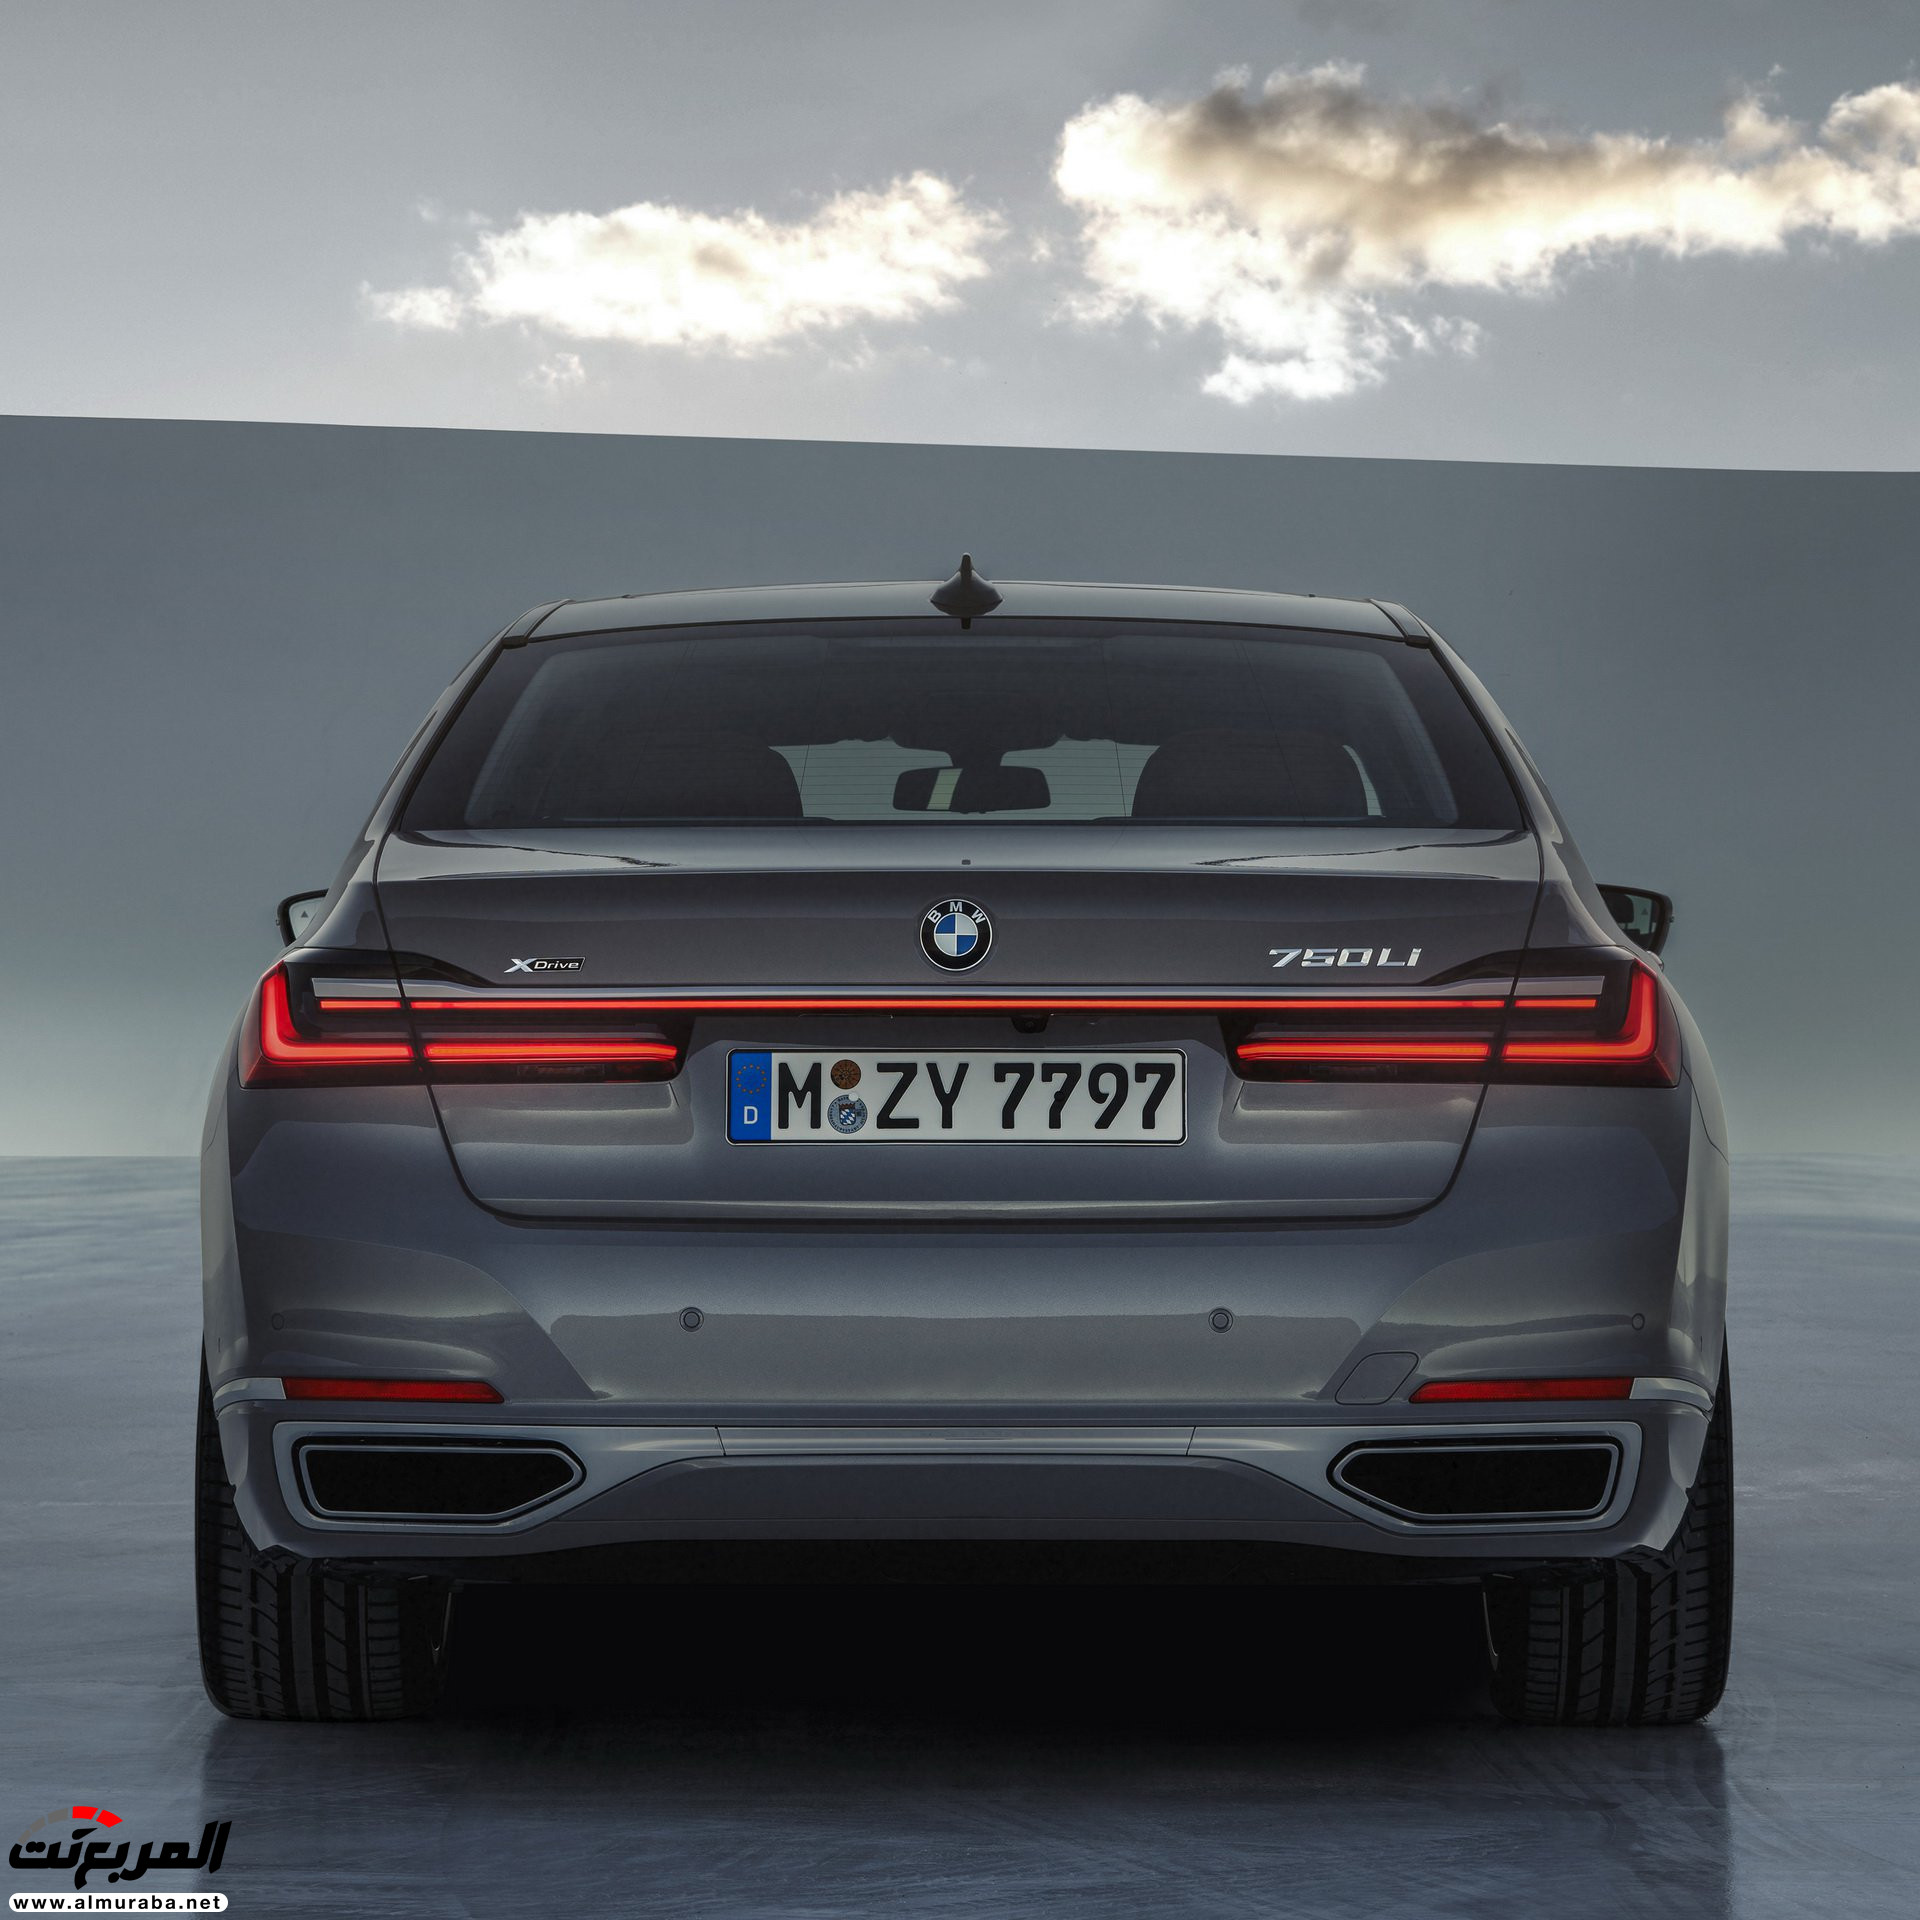 بي ام دبليو الفئة السابعة 2020 المحدثة تكشف نفسها رسمياً "صور ومواصفات" BMW 7 Series 263